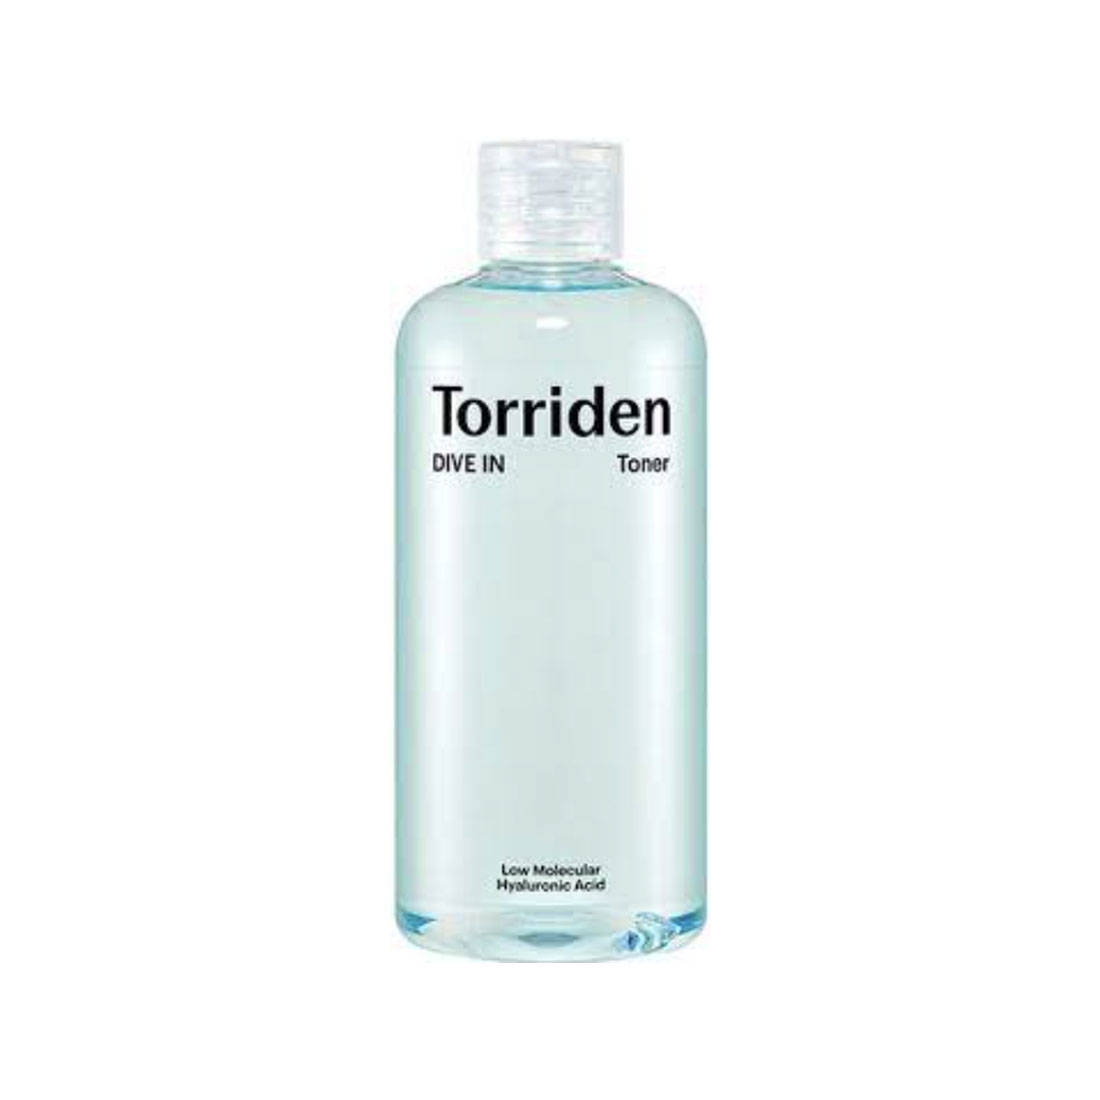 Torriden Dive-In Low Molecular Hyaluronic Acid Toner 300ml